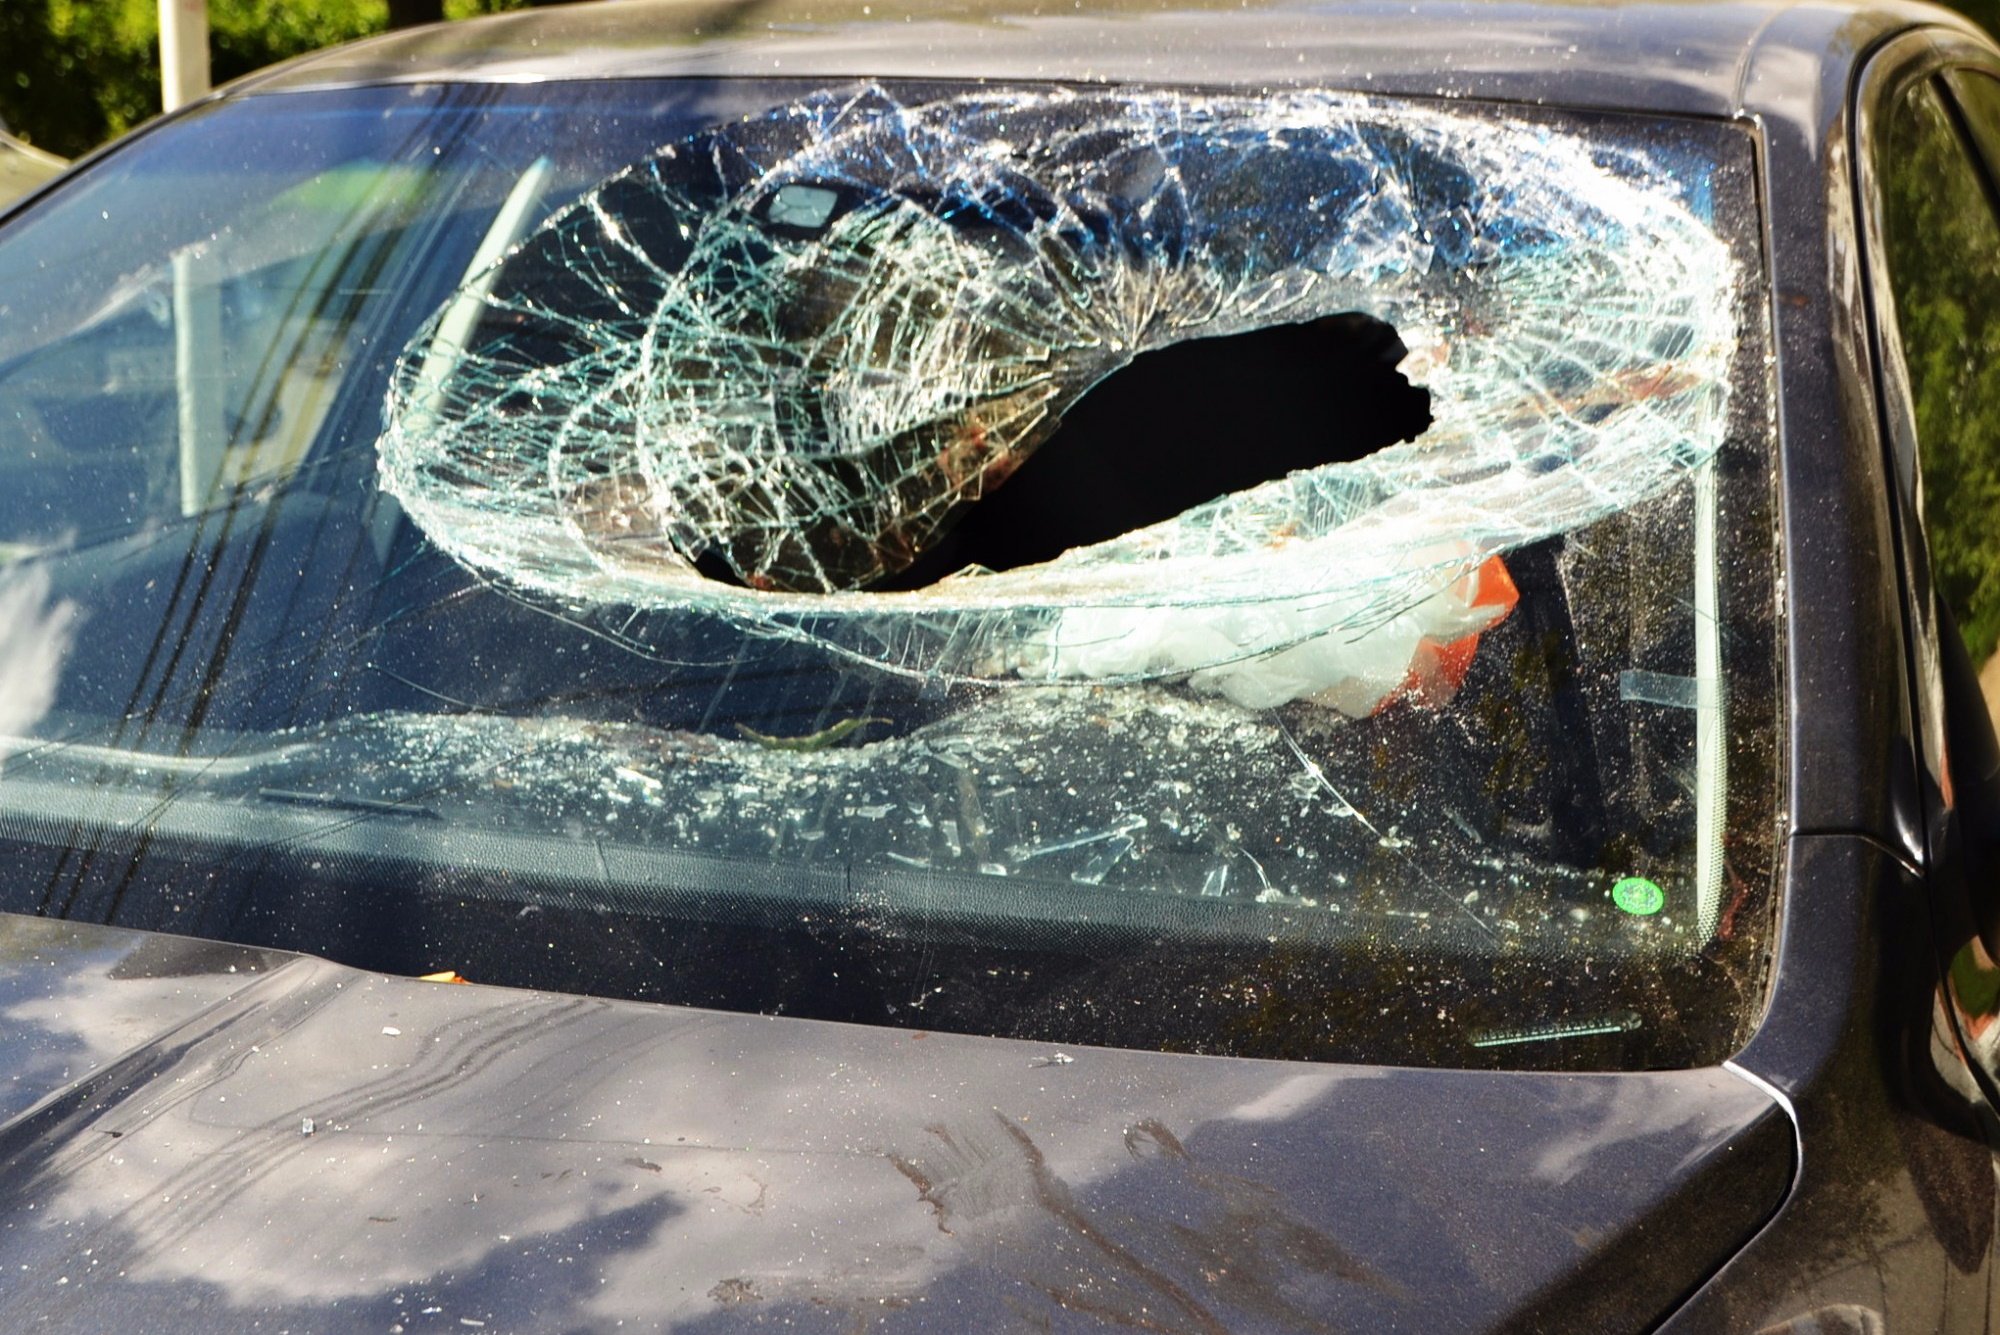 Авто трещина. Разбитое лобовое стекло. Разбитое стекло автомобиля. Разбитые стекла в машине. Битое автомобильное стекло.